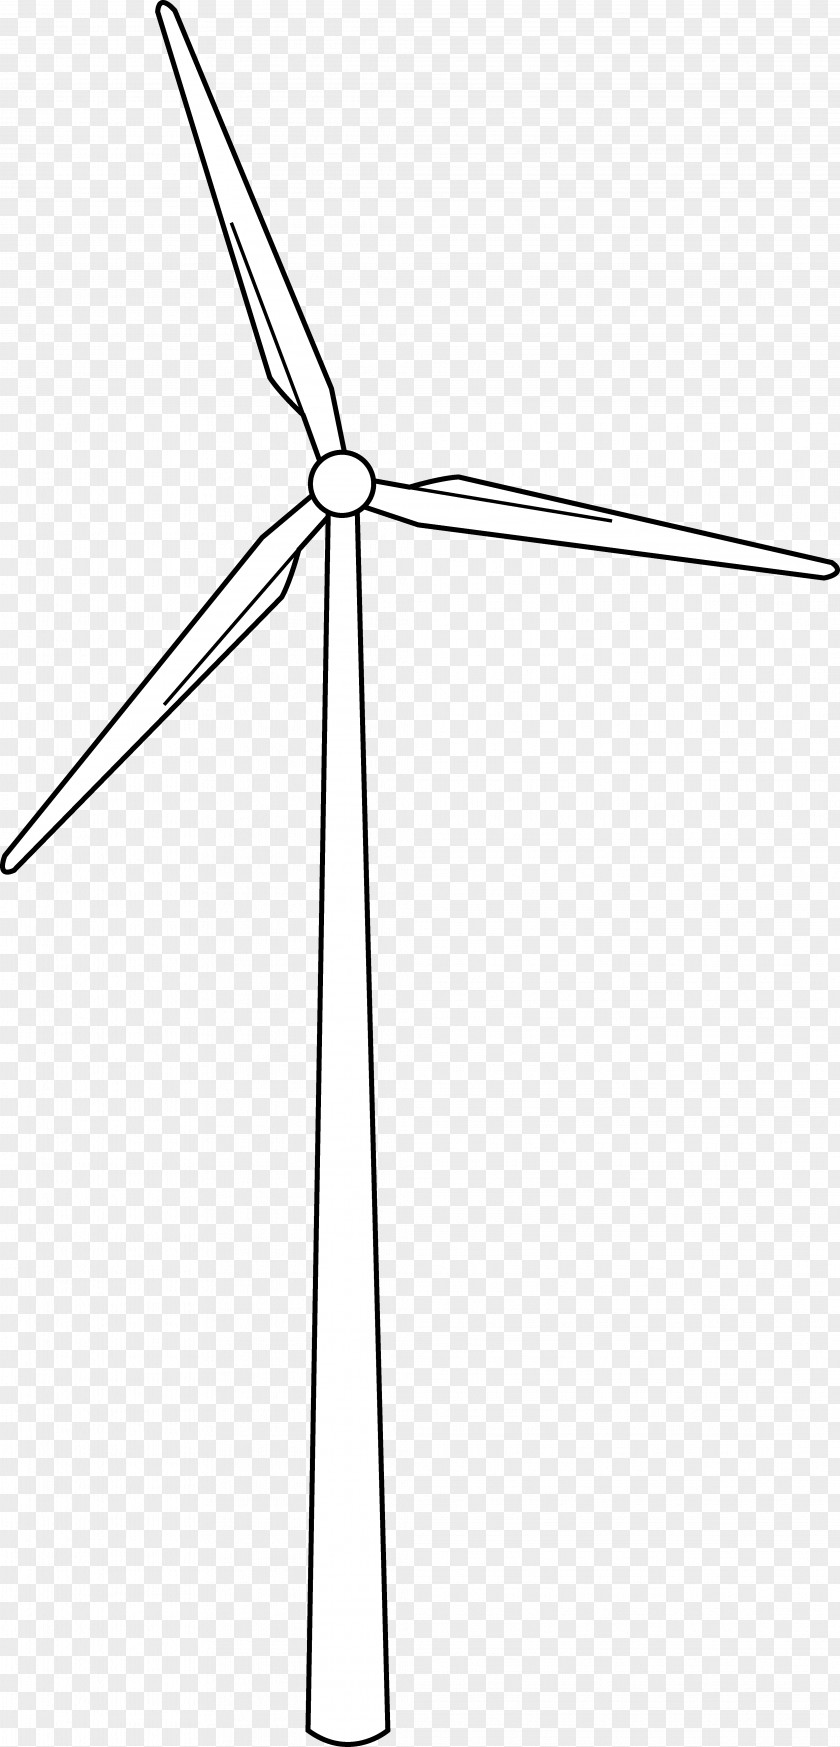 Windmill Wind Farm Turbine Power Drawing PNG